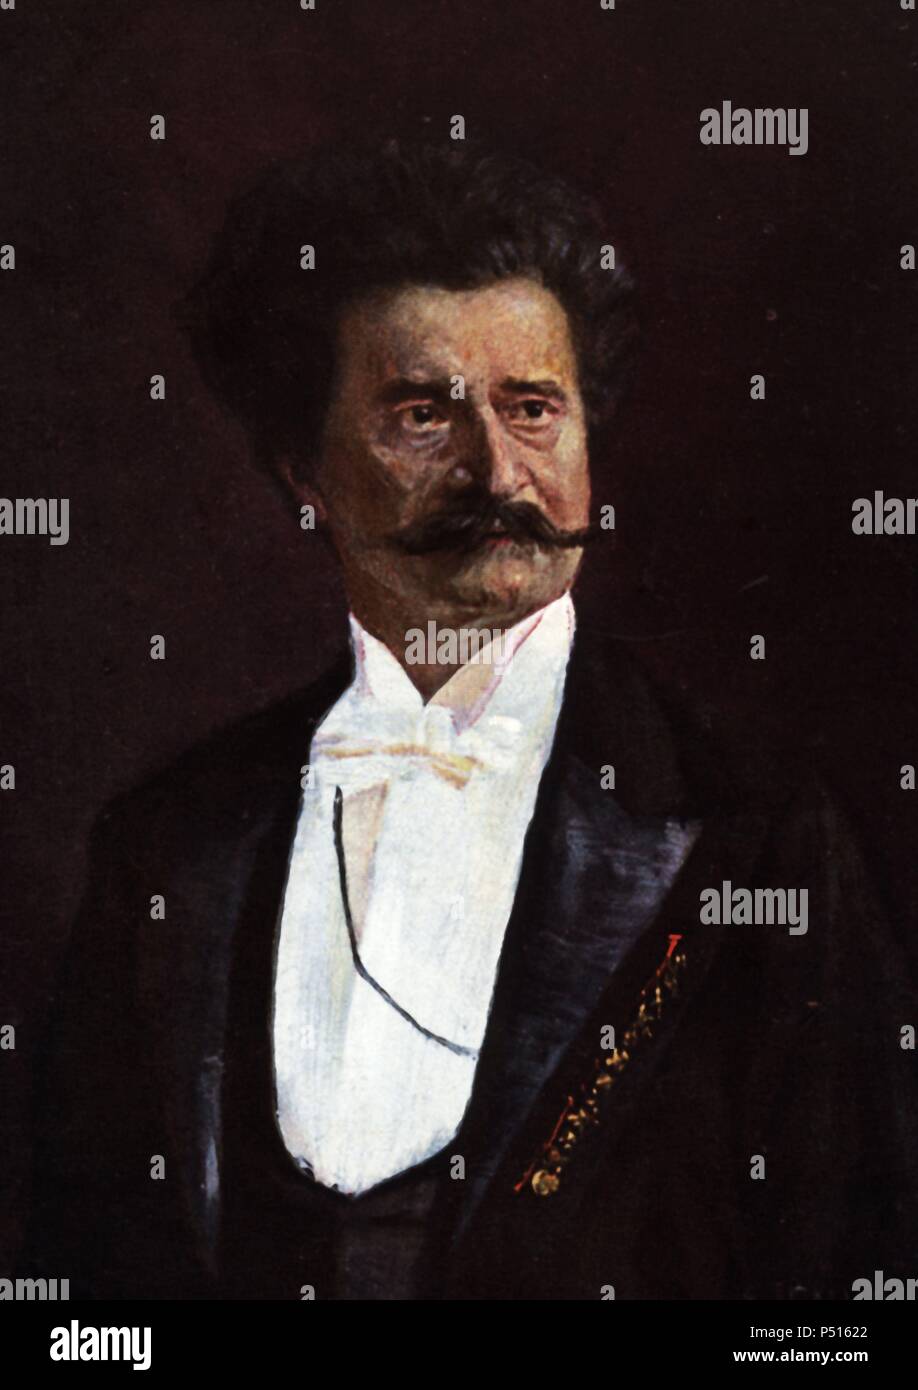 Johann Strauss, hijo (Viena, 1825-1899). Director de orquesta y compositor austríaco, conocido com "el rey del vals", autor de El Danubio Azul. Stock Photo